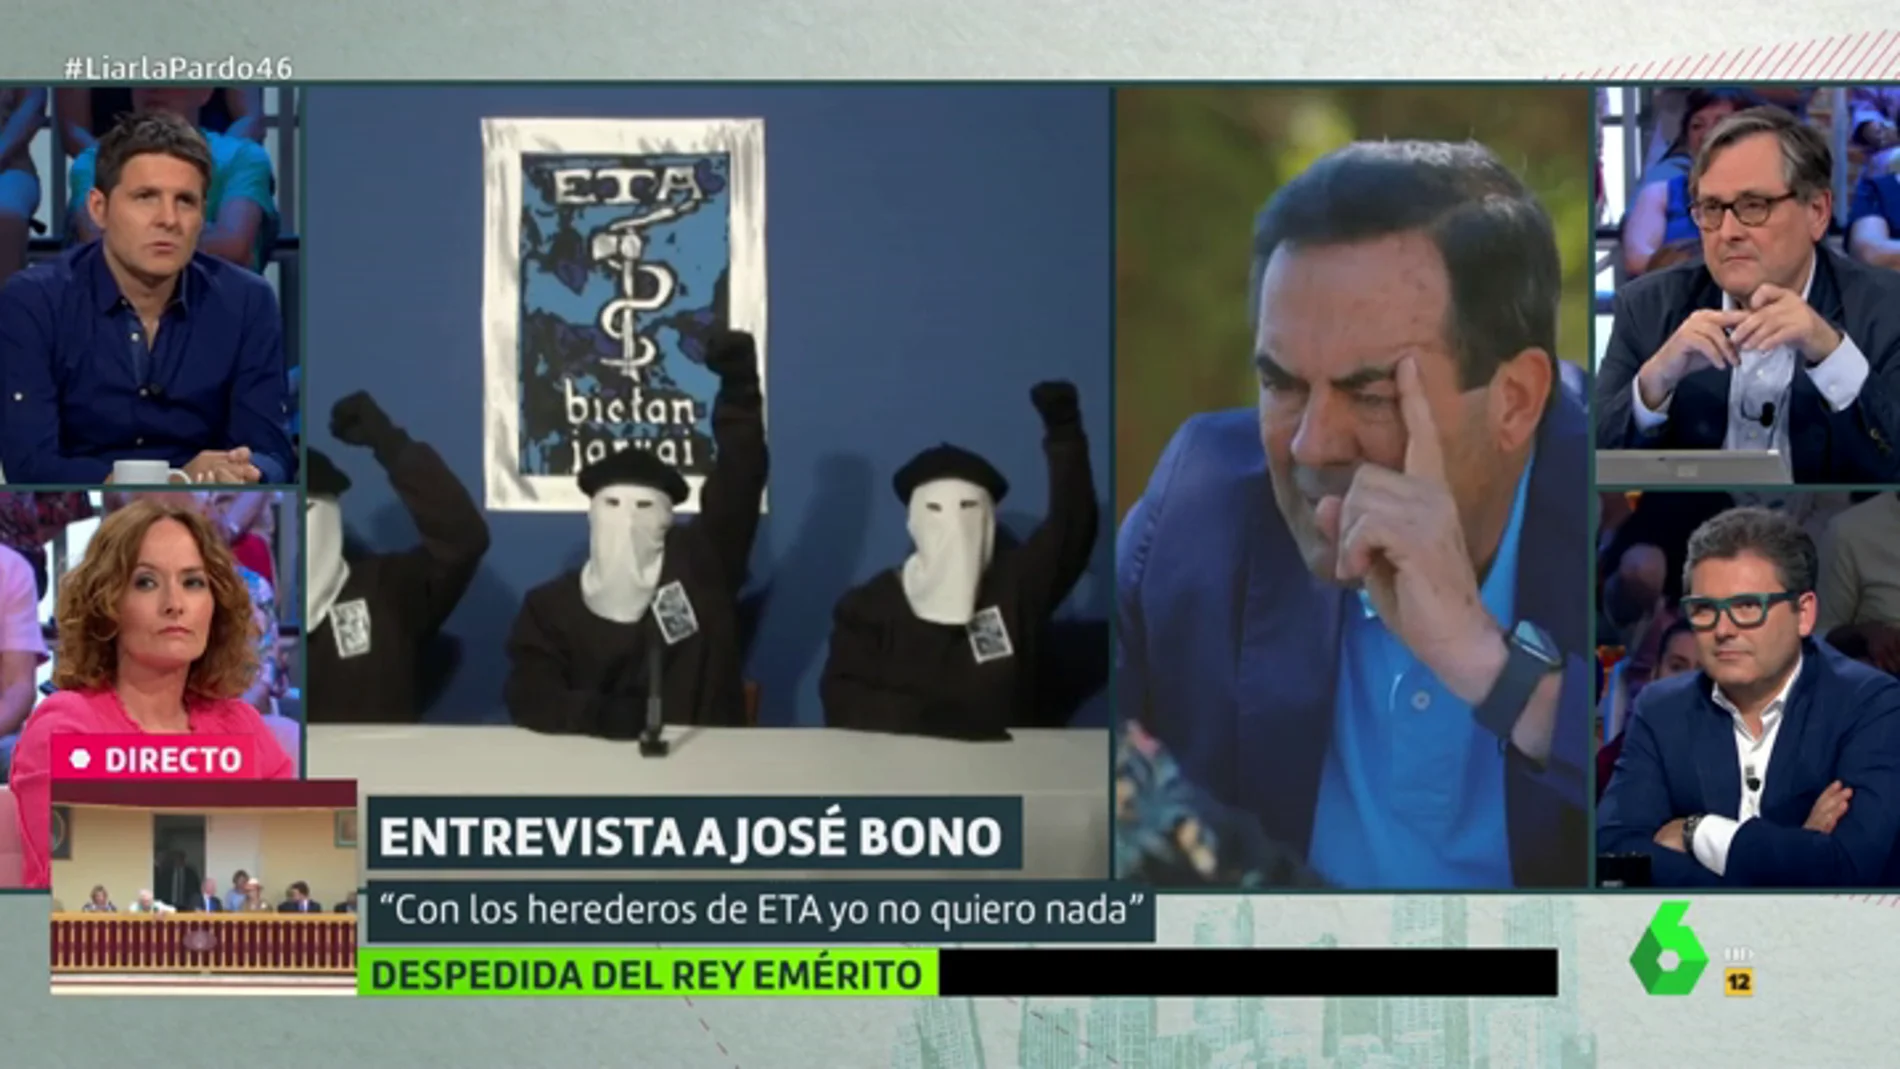 José Bono no pactaría con Bildu en ninguna situación: "Con los herederos de ETA yo no quiero nada"